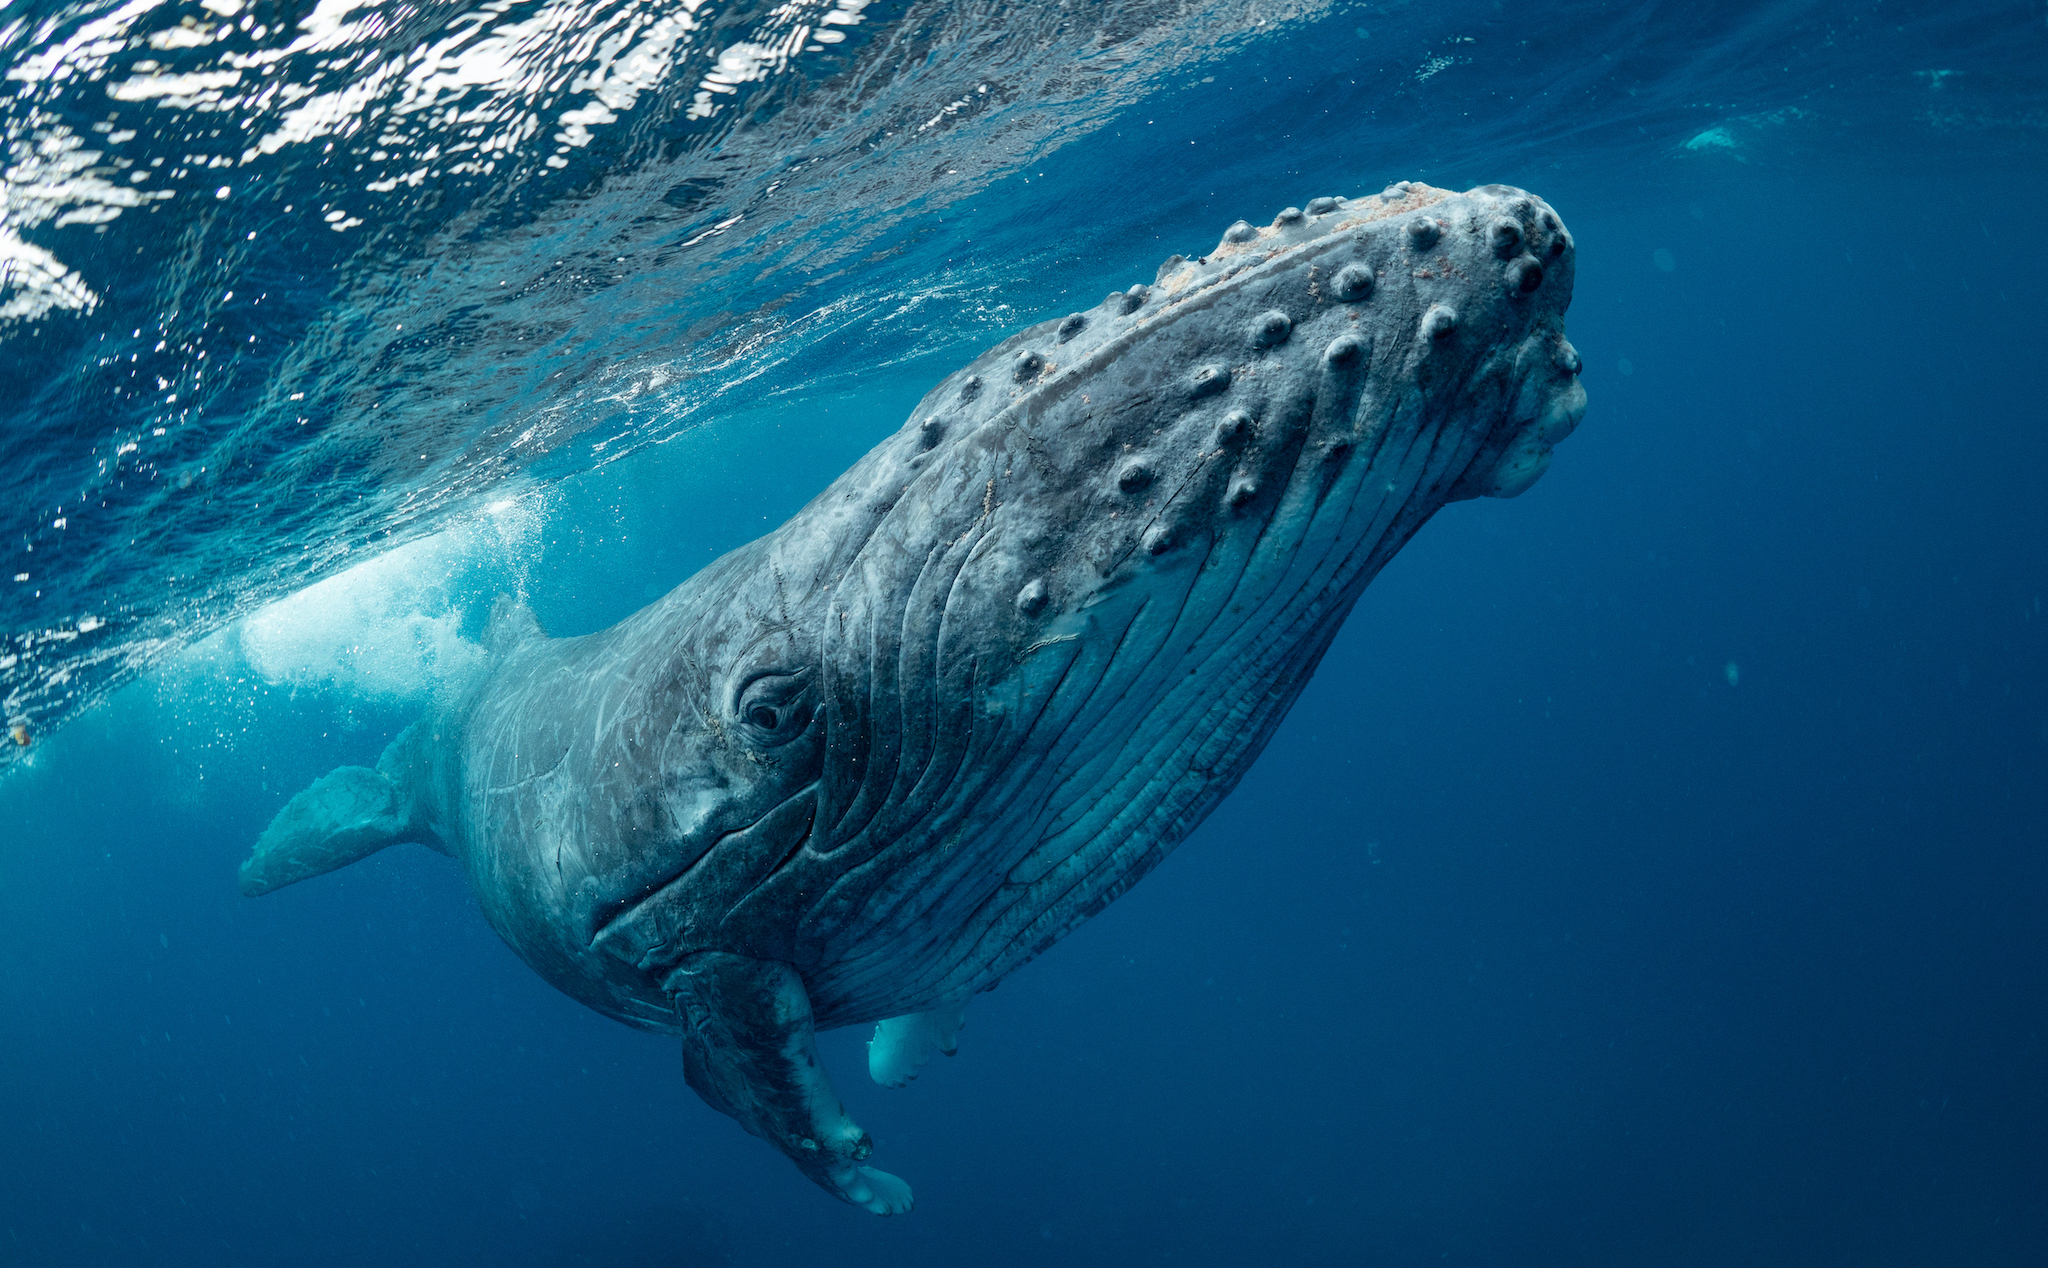 Cấu trúc khoang miệng đặc biệt của cá voi lưng gù giúp nó bắt và tiêu thụ được một lượng lớn sinh vật biển